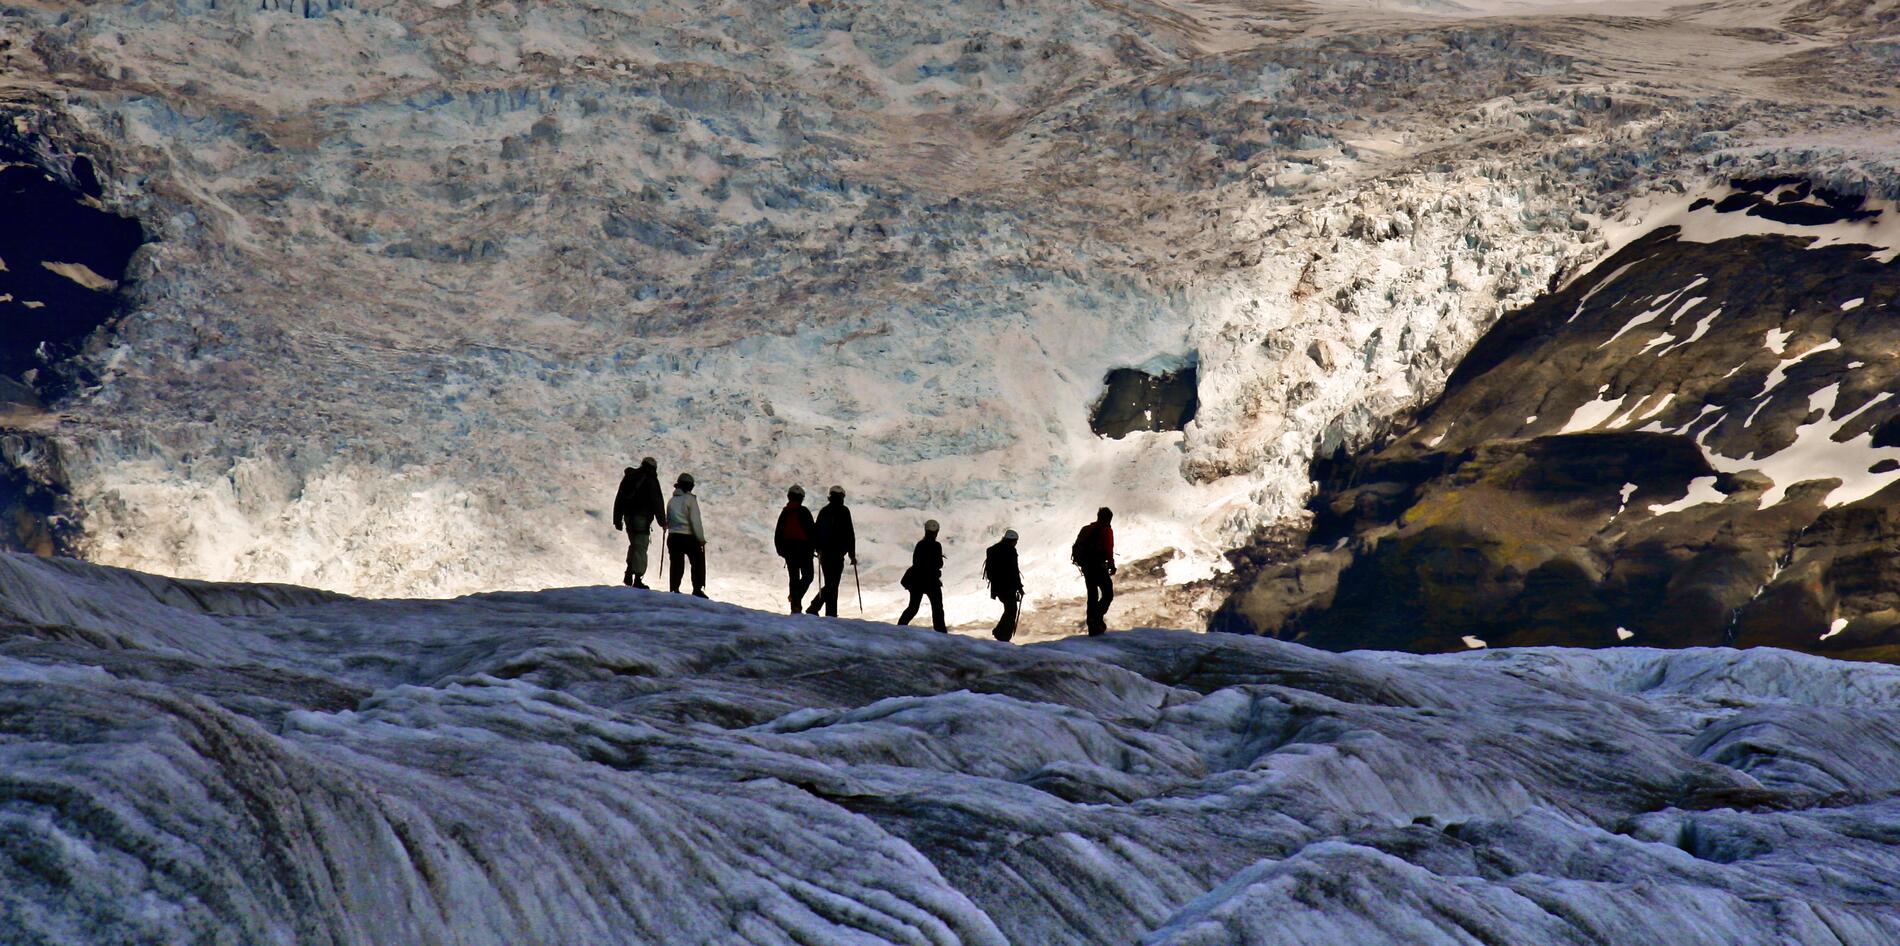 El 11% de la superficie de Islandia está cubierta por glaciares, incluyendo a Vatnajökull, el glaciar más grande de Europa